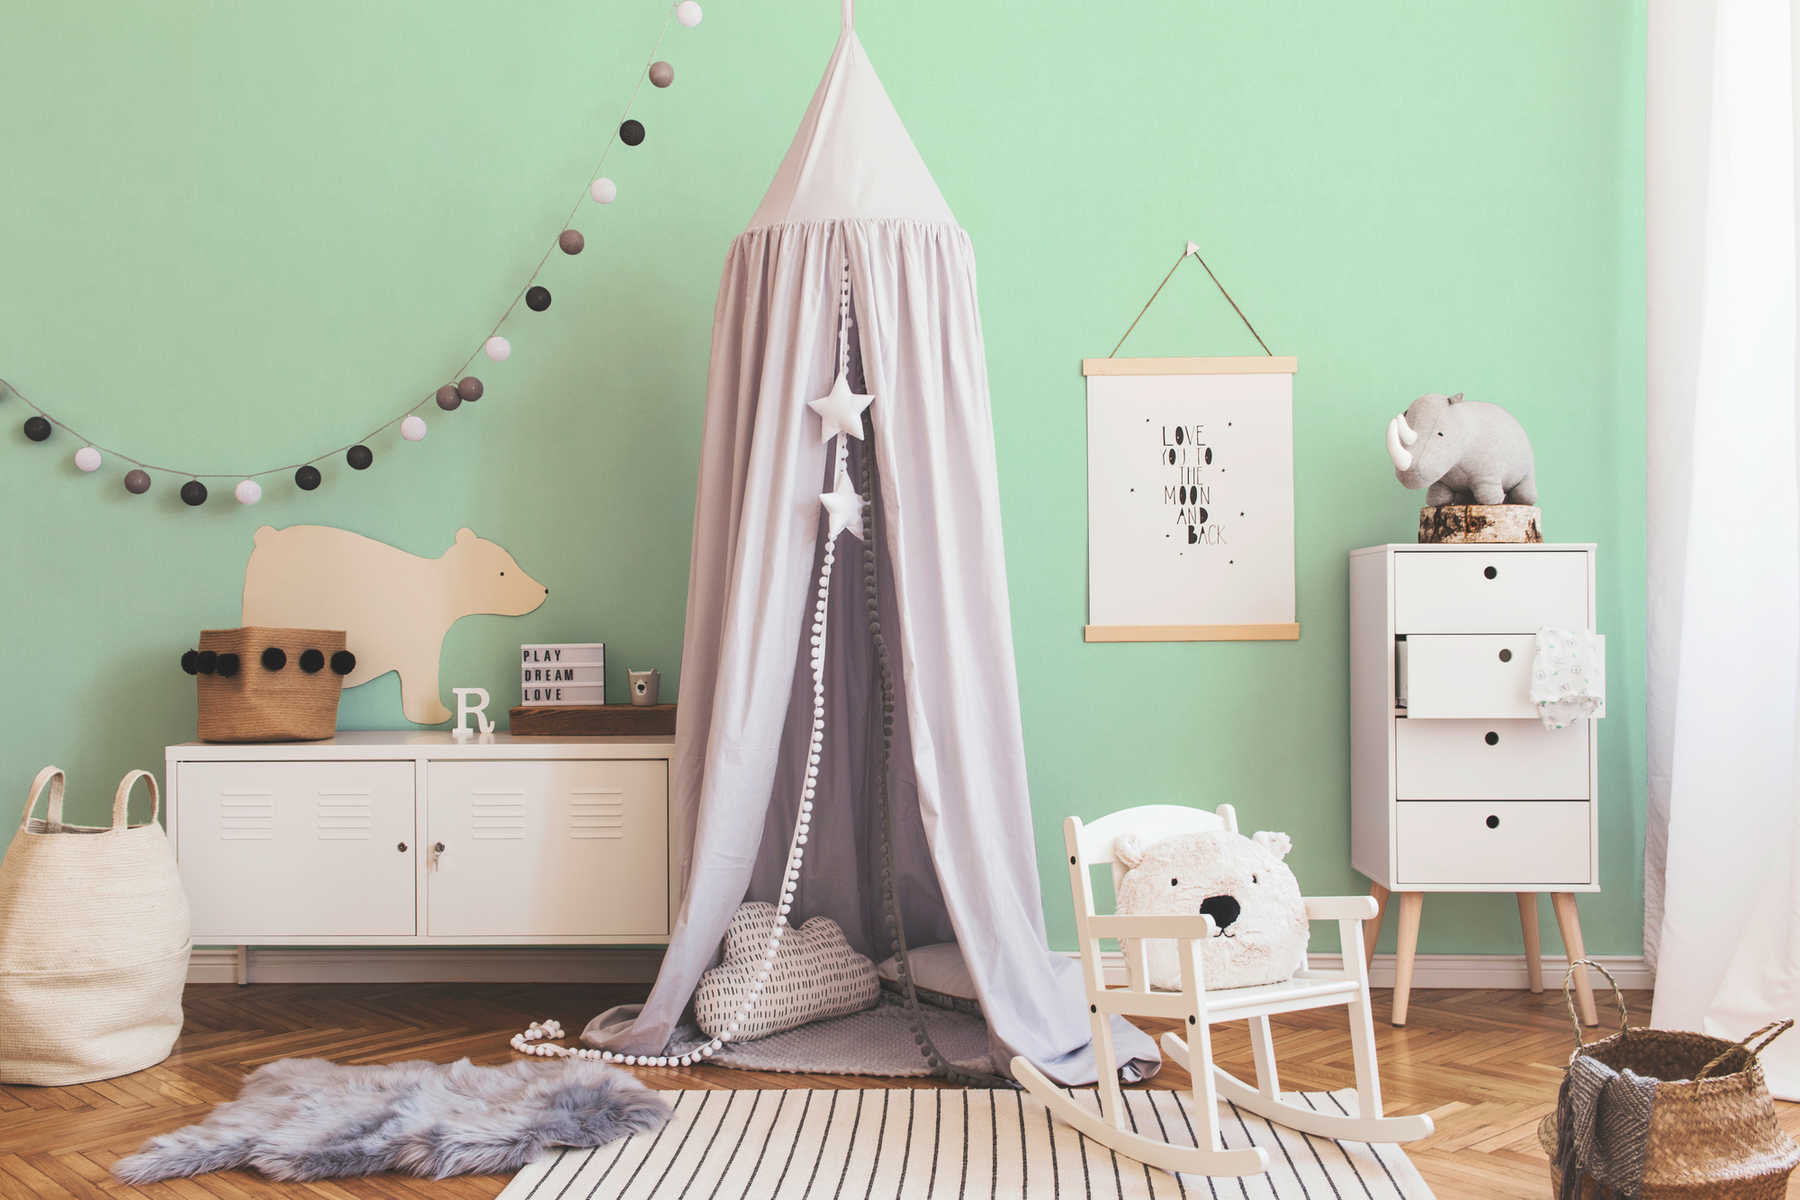             Pastellgrüne Vliestapete einfarbig für Kinderzimmer – Grün
        